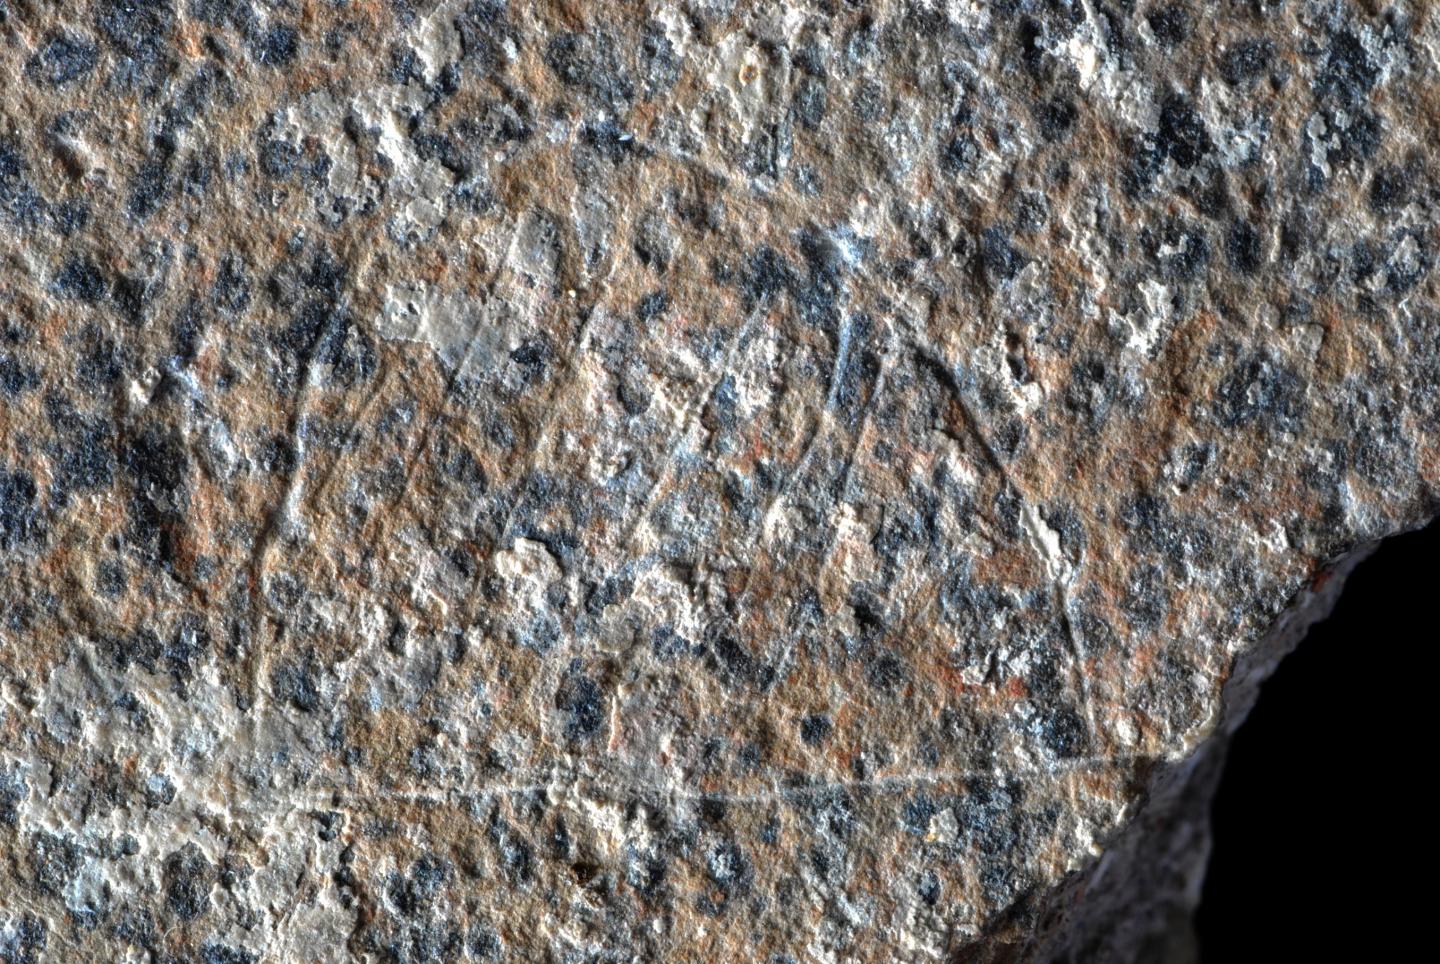 Engraved Schist Slab May Depict Paleolithic Campsites